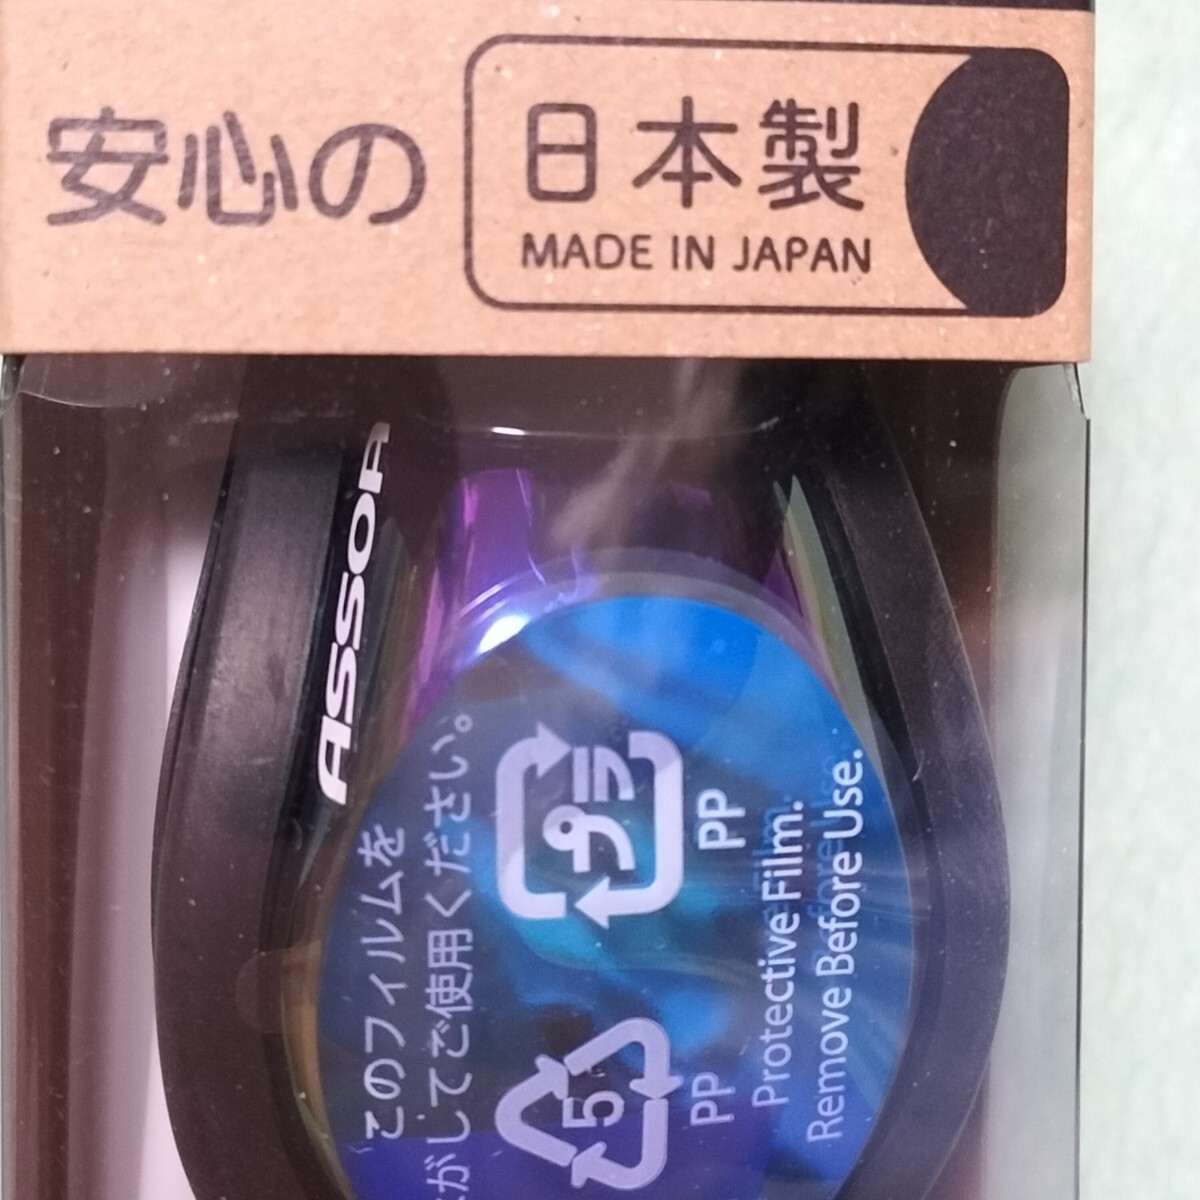 ◆新品 未使用 ASSOA 水泳 プール スイミング swimming ミラーモデル 黒色 Black MADE IN JAPAN 日本製 ミラーゴーグルの画像2